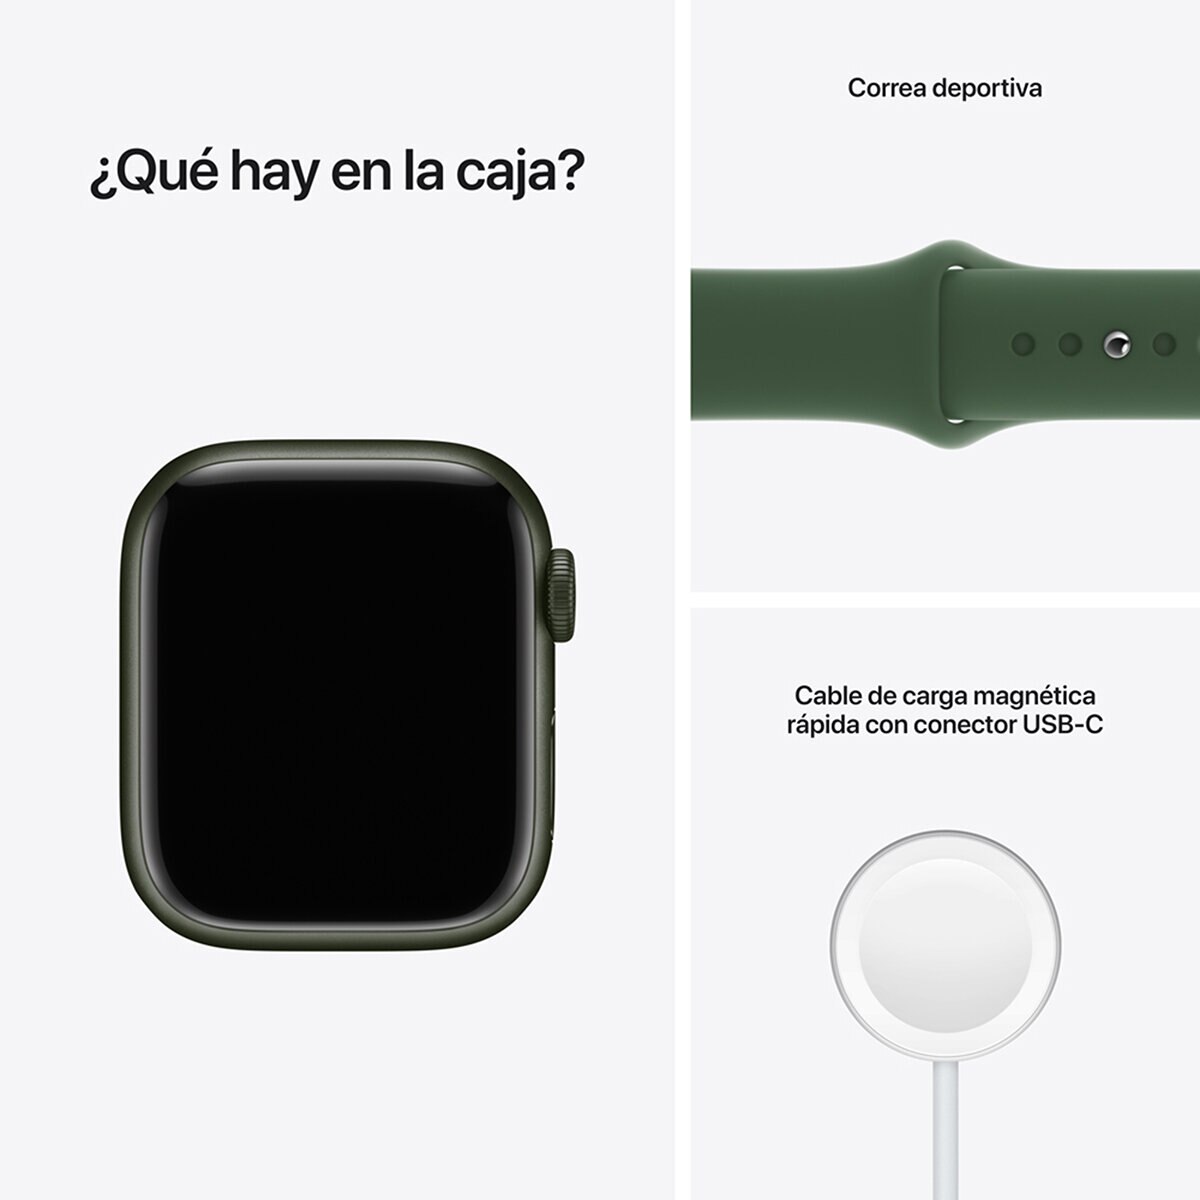 Apple Watch S7 (GPS+Celular) Caja de aluminio verde 41mm con correa deportiva verde trébol